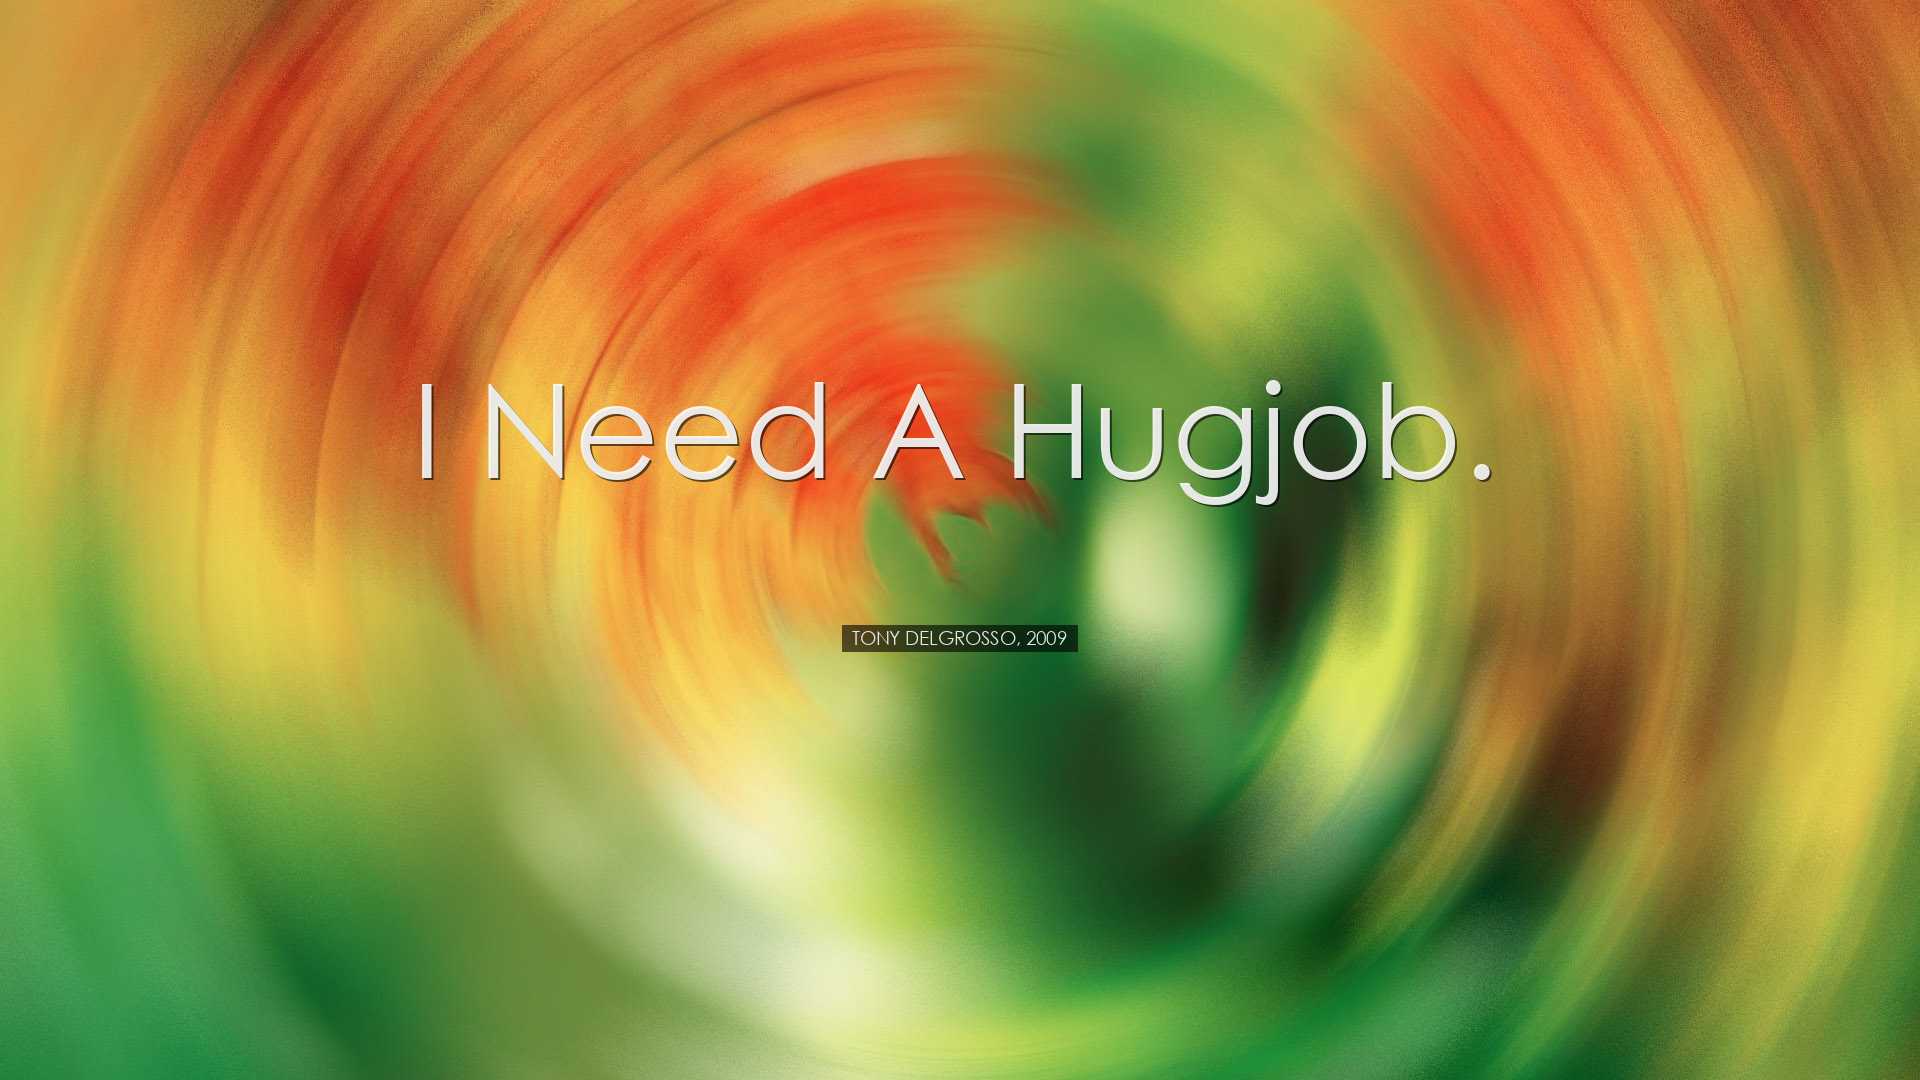 I need a hugjob. - Tony Delgrosso, 2009